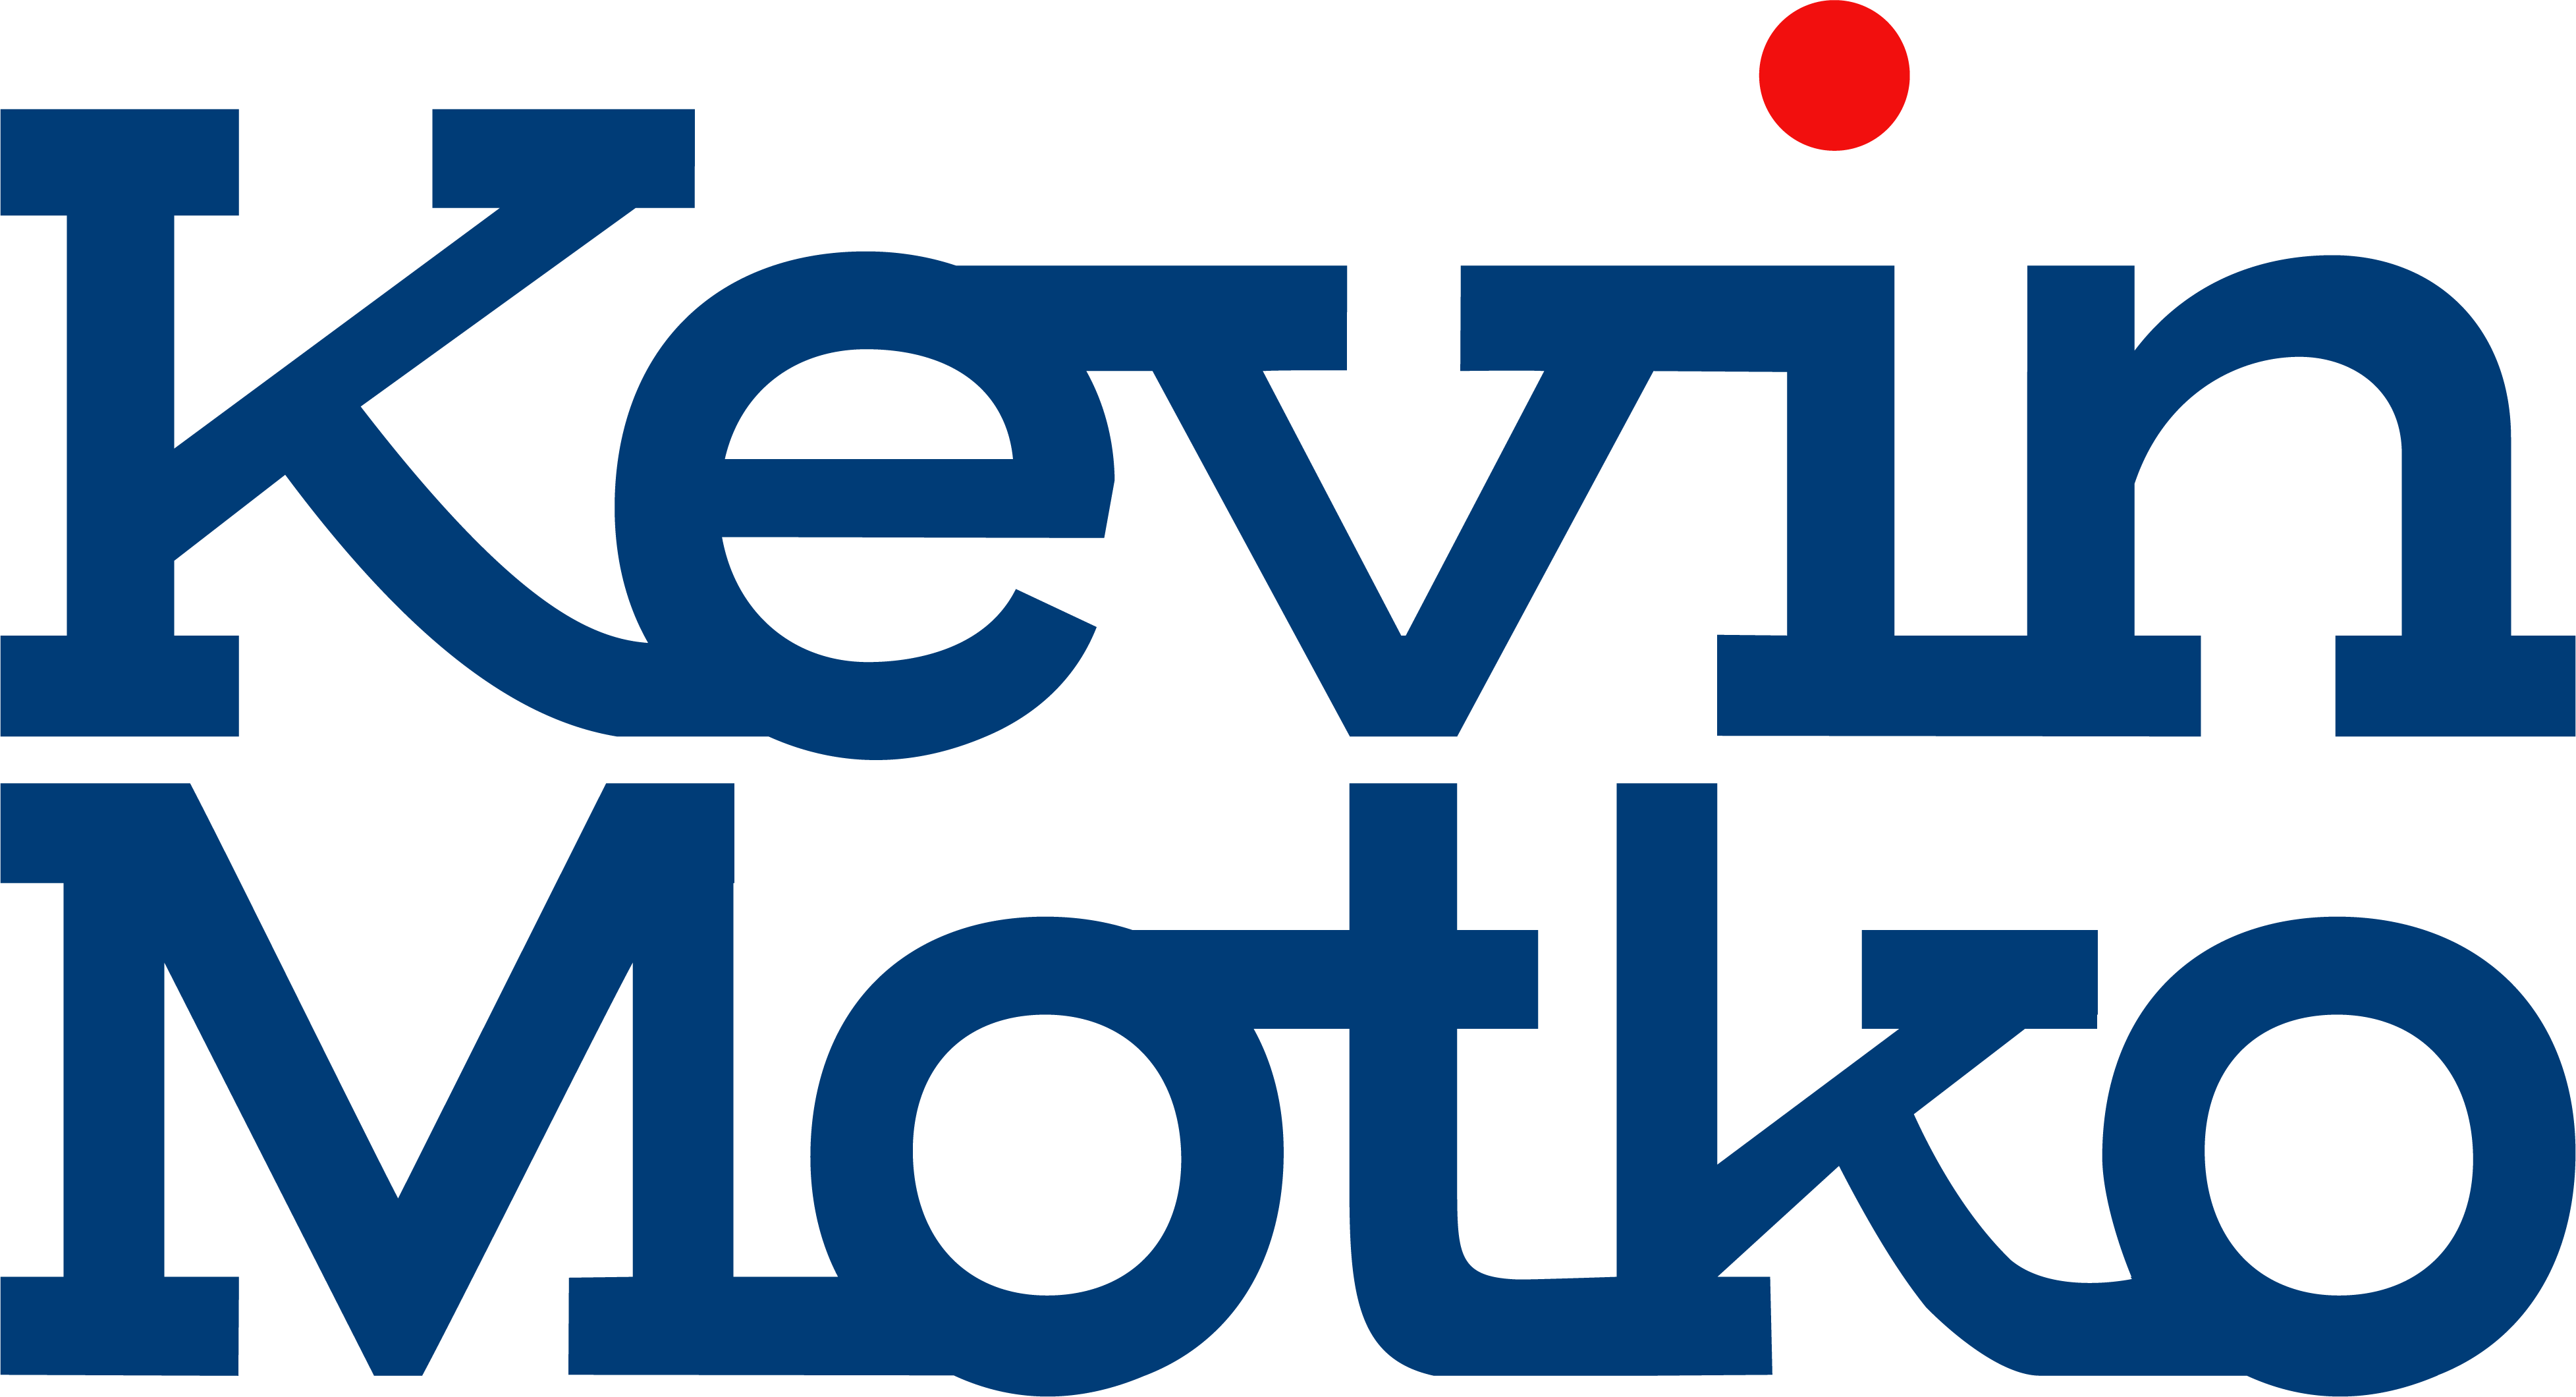 Kevin Motko